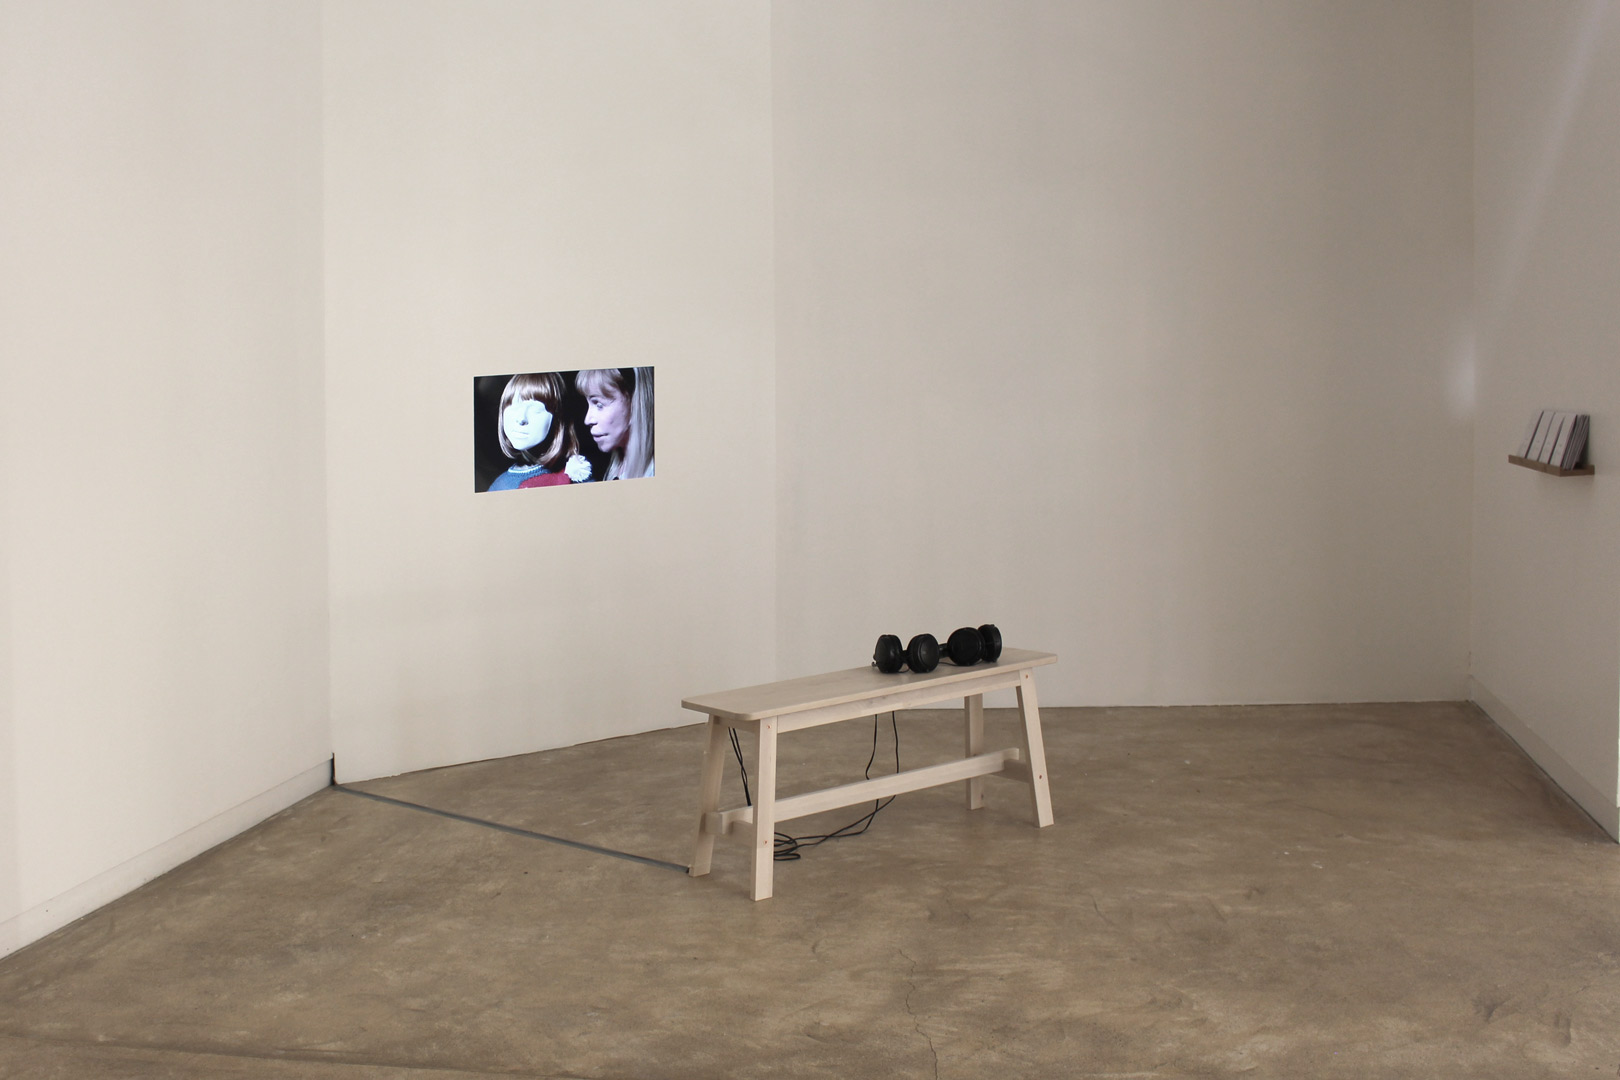 Vue de l'exposition intitulée " J'ai léché l'entour de vos yeux". Vue de la mise en espace de la vidéo "A vous", écran vidéo encastré dans le mur, un banc et deux casques audio.